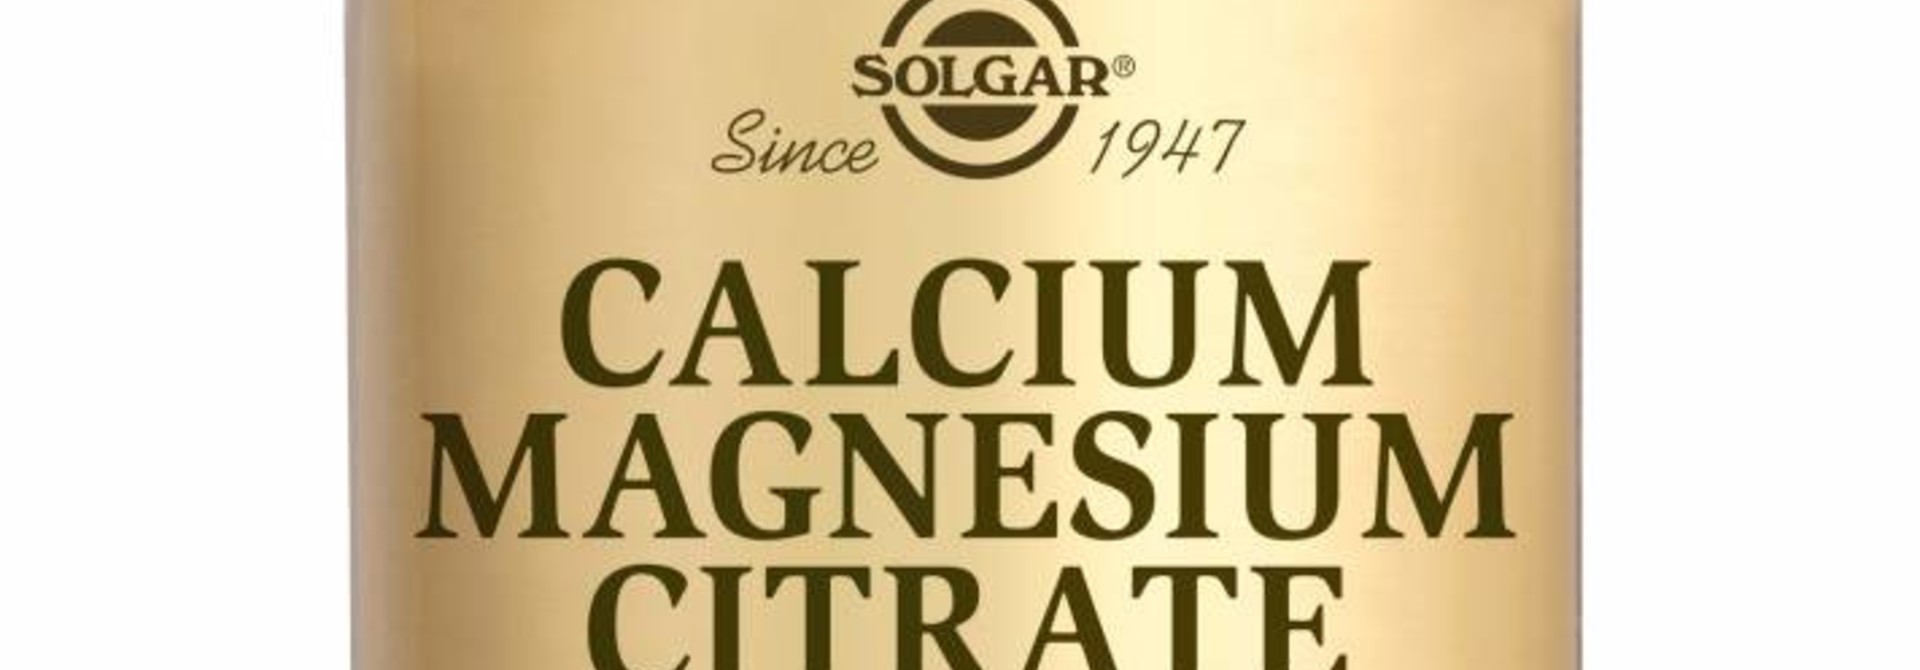 Calcium Magnesium Citrate 100 tabletten